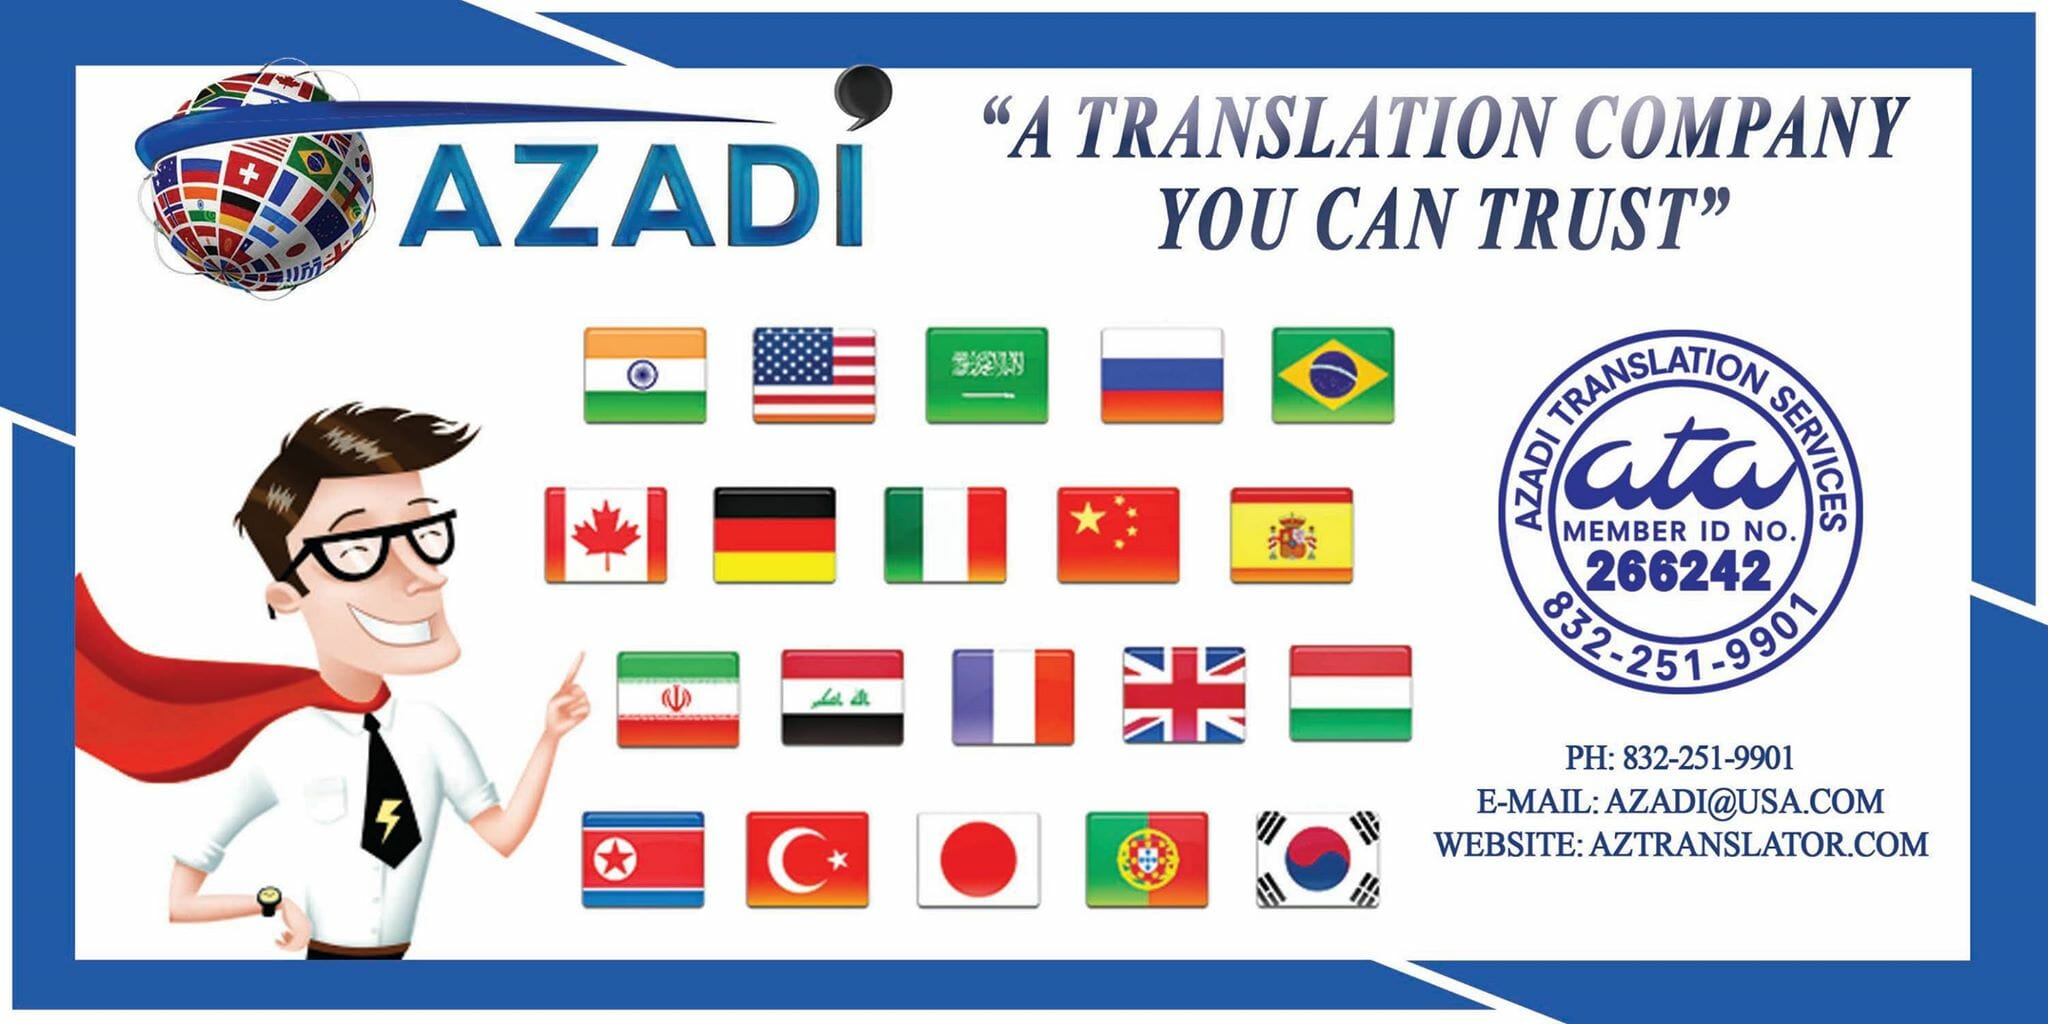 ukrainian translation service banner from AZ translation service